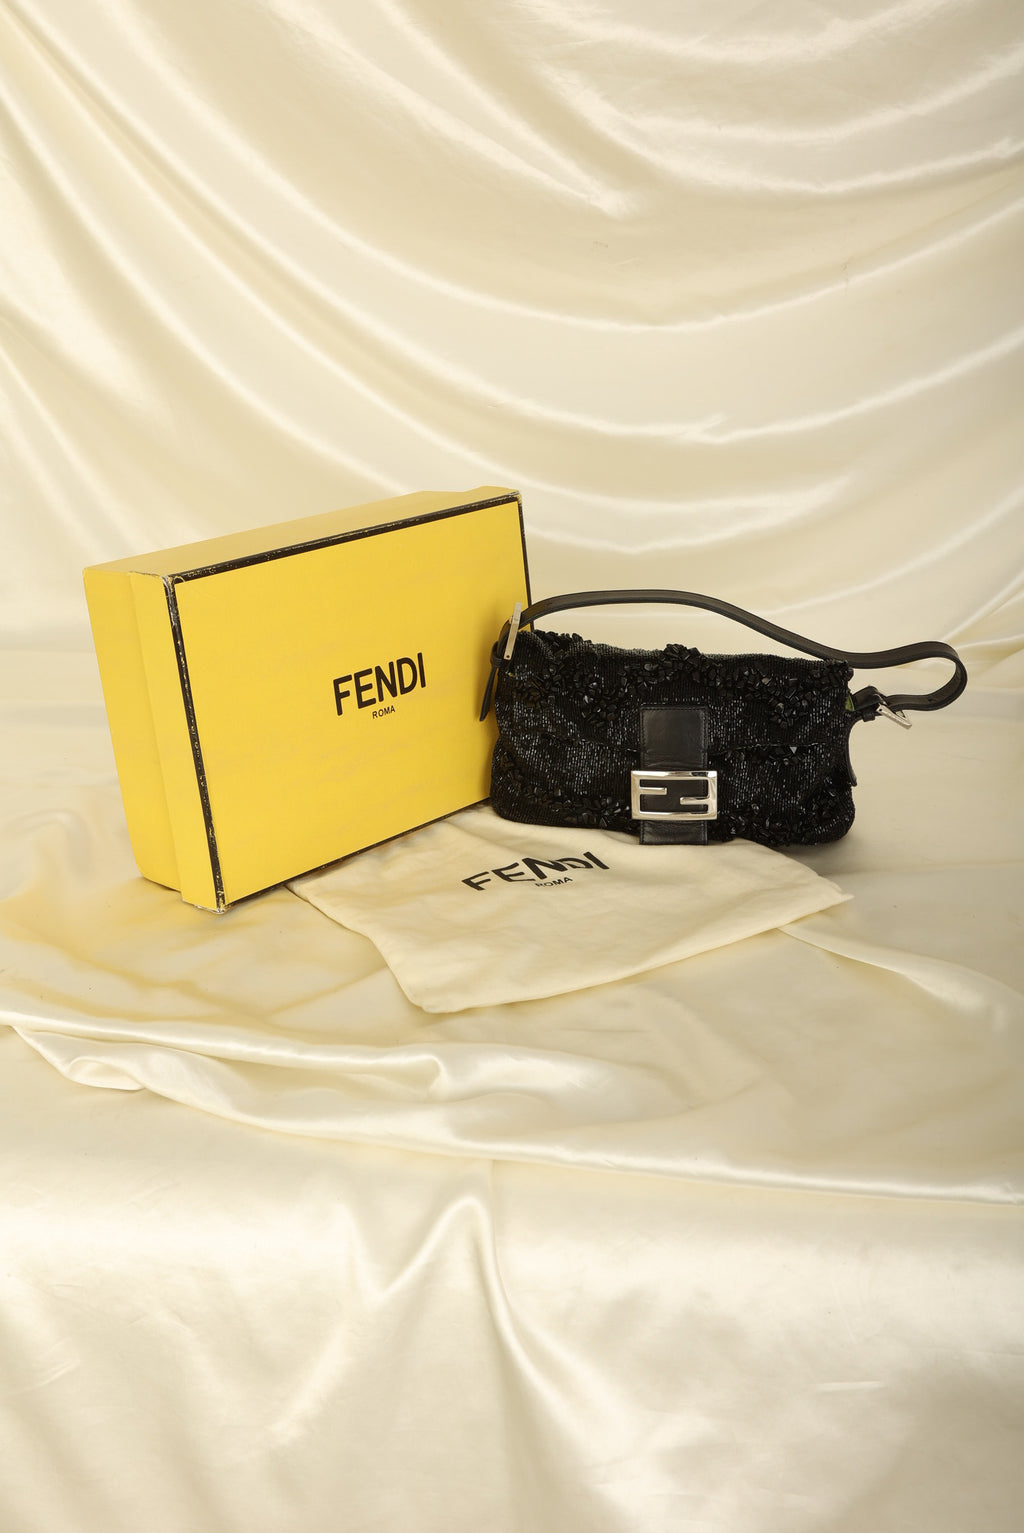 FENDI Zucca Mini Pochette ❤️Sold Vายแล้วค่ะ❤️ Size: 7”x2.5”x5.5  ใส่โทรศัพท์ได้ สภาพใ